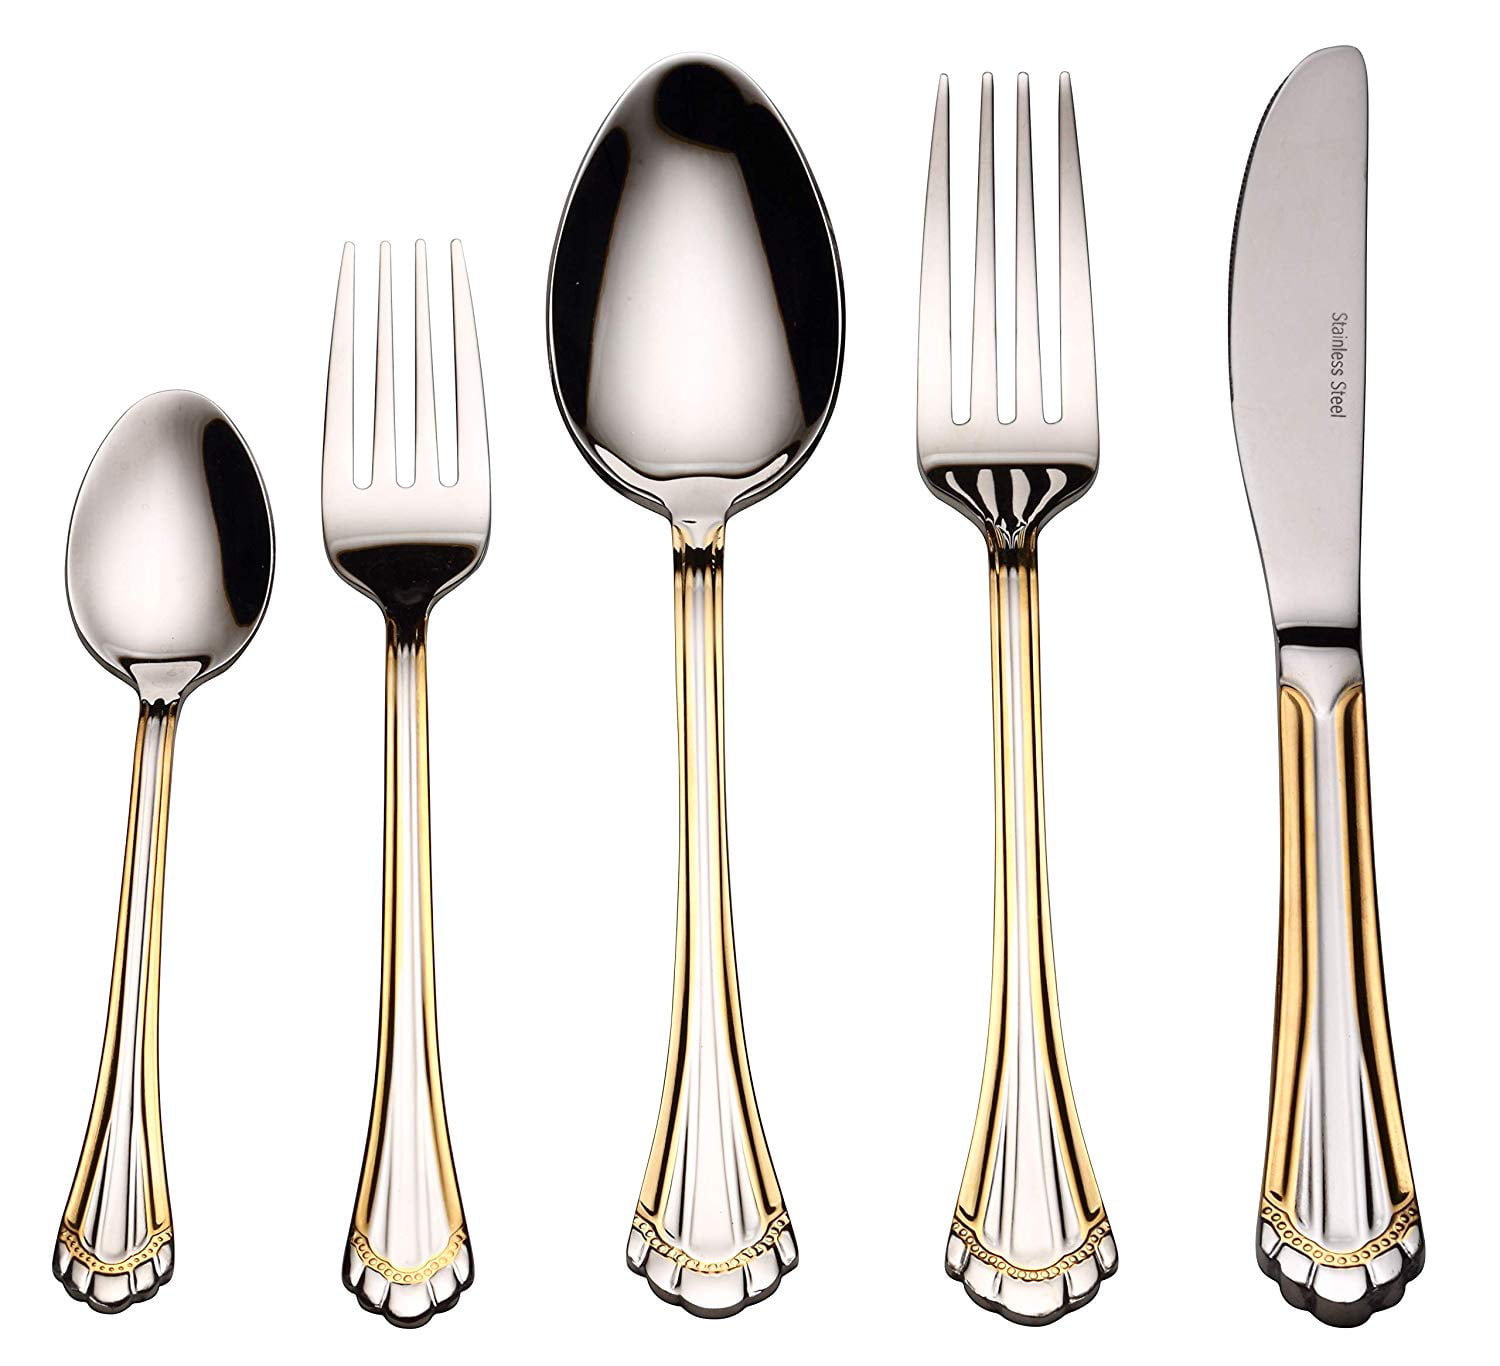 Dishwasher Safe Metal Kitchen Silverware Sets Melange Moderno Stainless Steel Flatware Set | Service of 6 30-Piece Elegant Knives Forks and Spoons